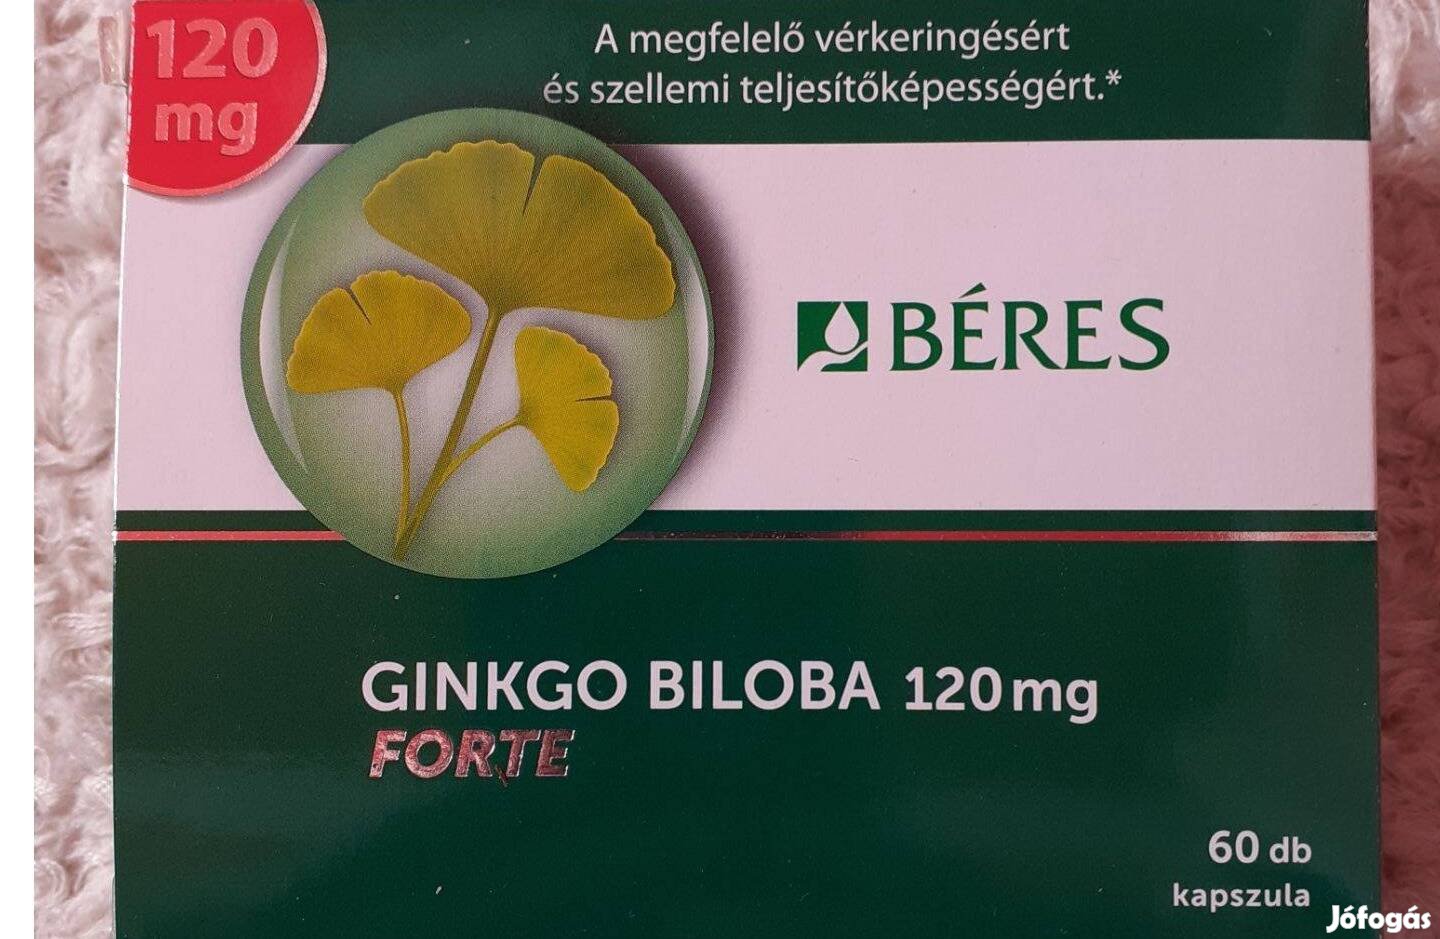 Béres Ginkgo Biloba Forte 120 mg kapszula eladó